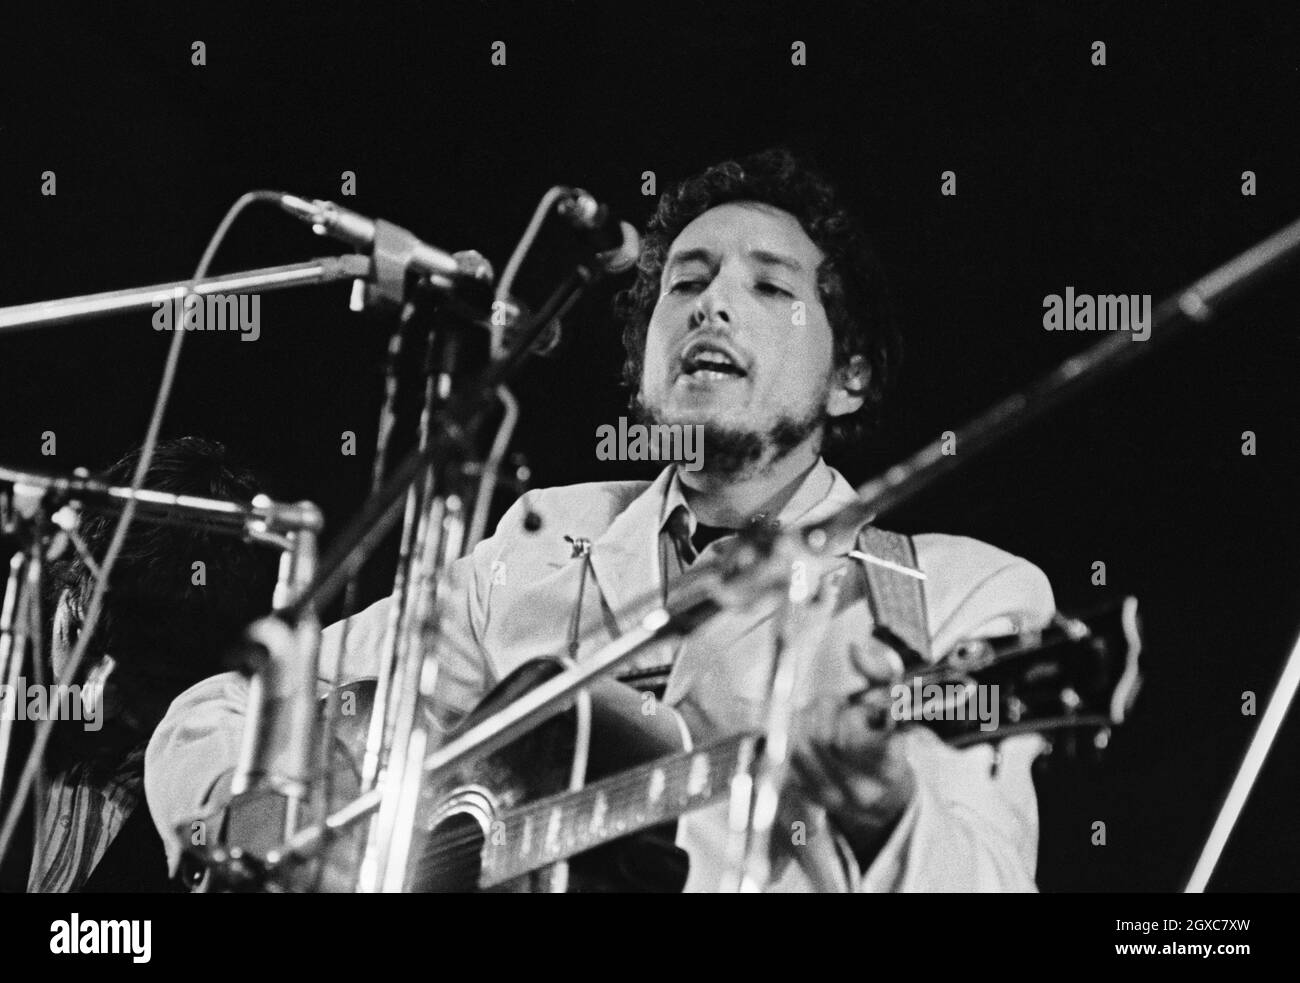 Der amerikanische Singer-Songwriter Bob Dylan auf der Bühne des Isle of Wight Festivals am 31. August 1969. Stockfoto